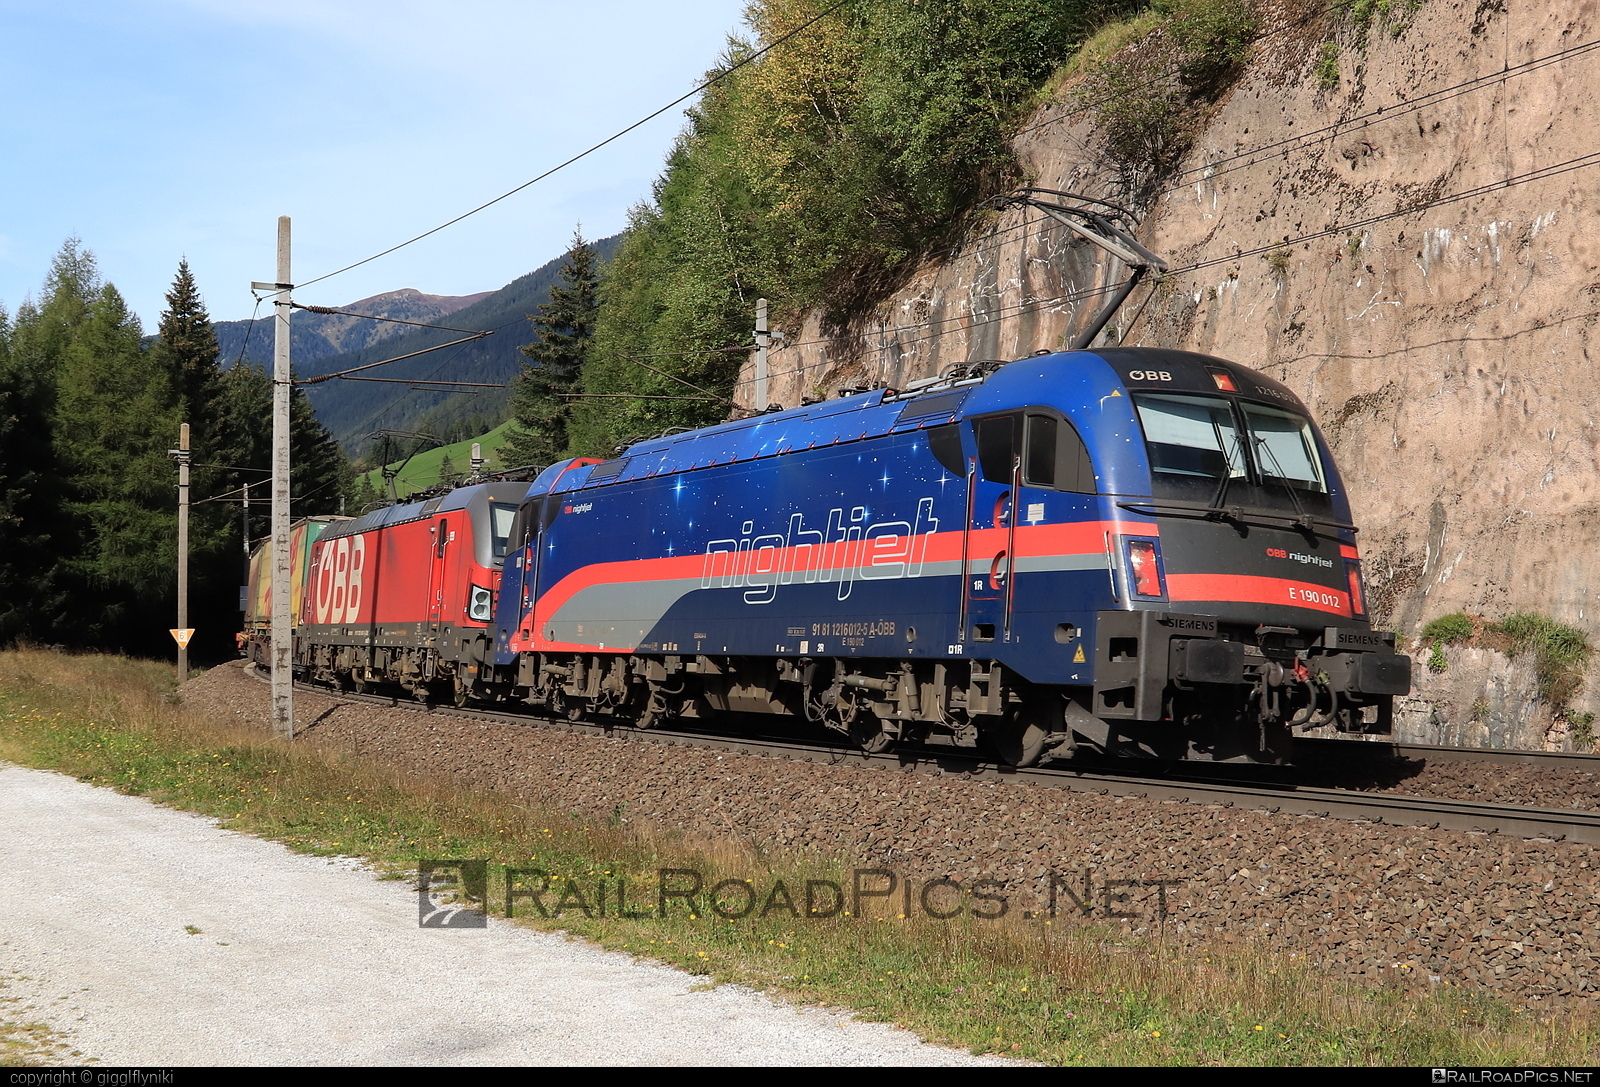 Siemens ES 64 U4 - 1216 012 operated by Rail Cargo Austria AG #es64 #es64u4 #eurosprinter #obb #osterreichischebundesbahnen #rcw #siemens #siemensEs64 #siemensEs64u4 #siemenstaurus #taurus #tauruslocomotive